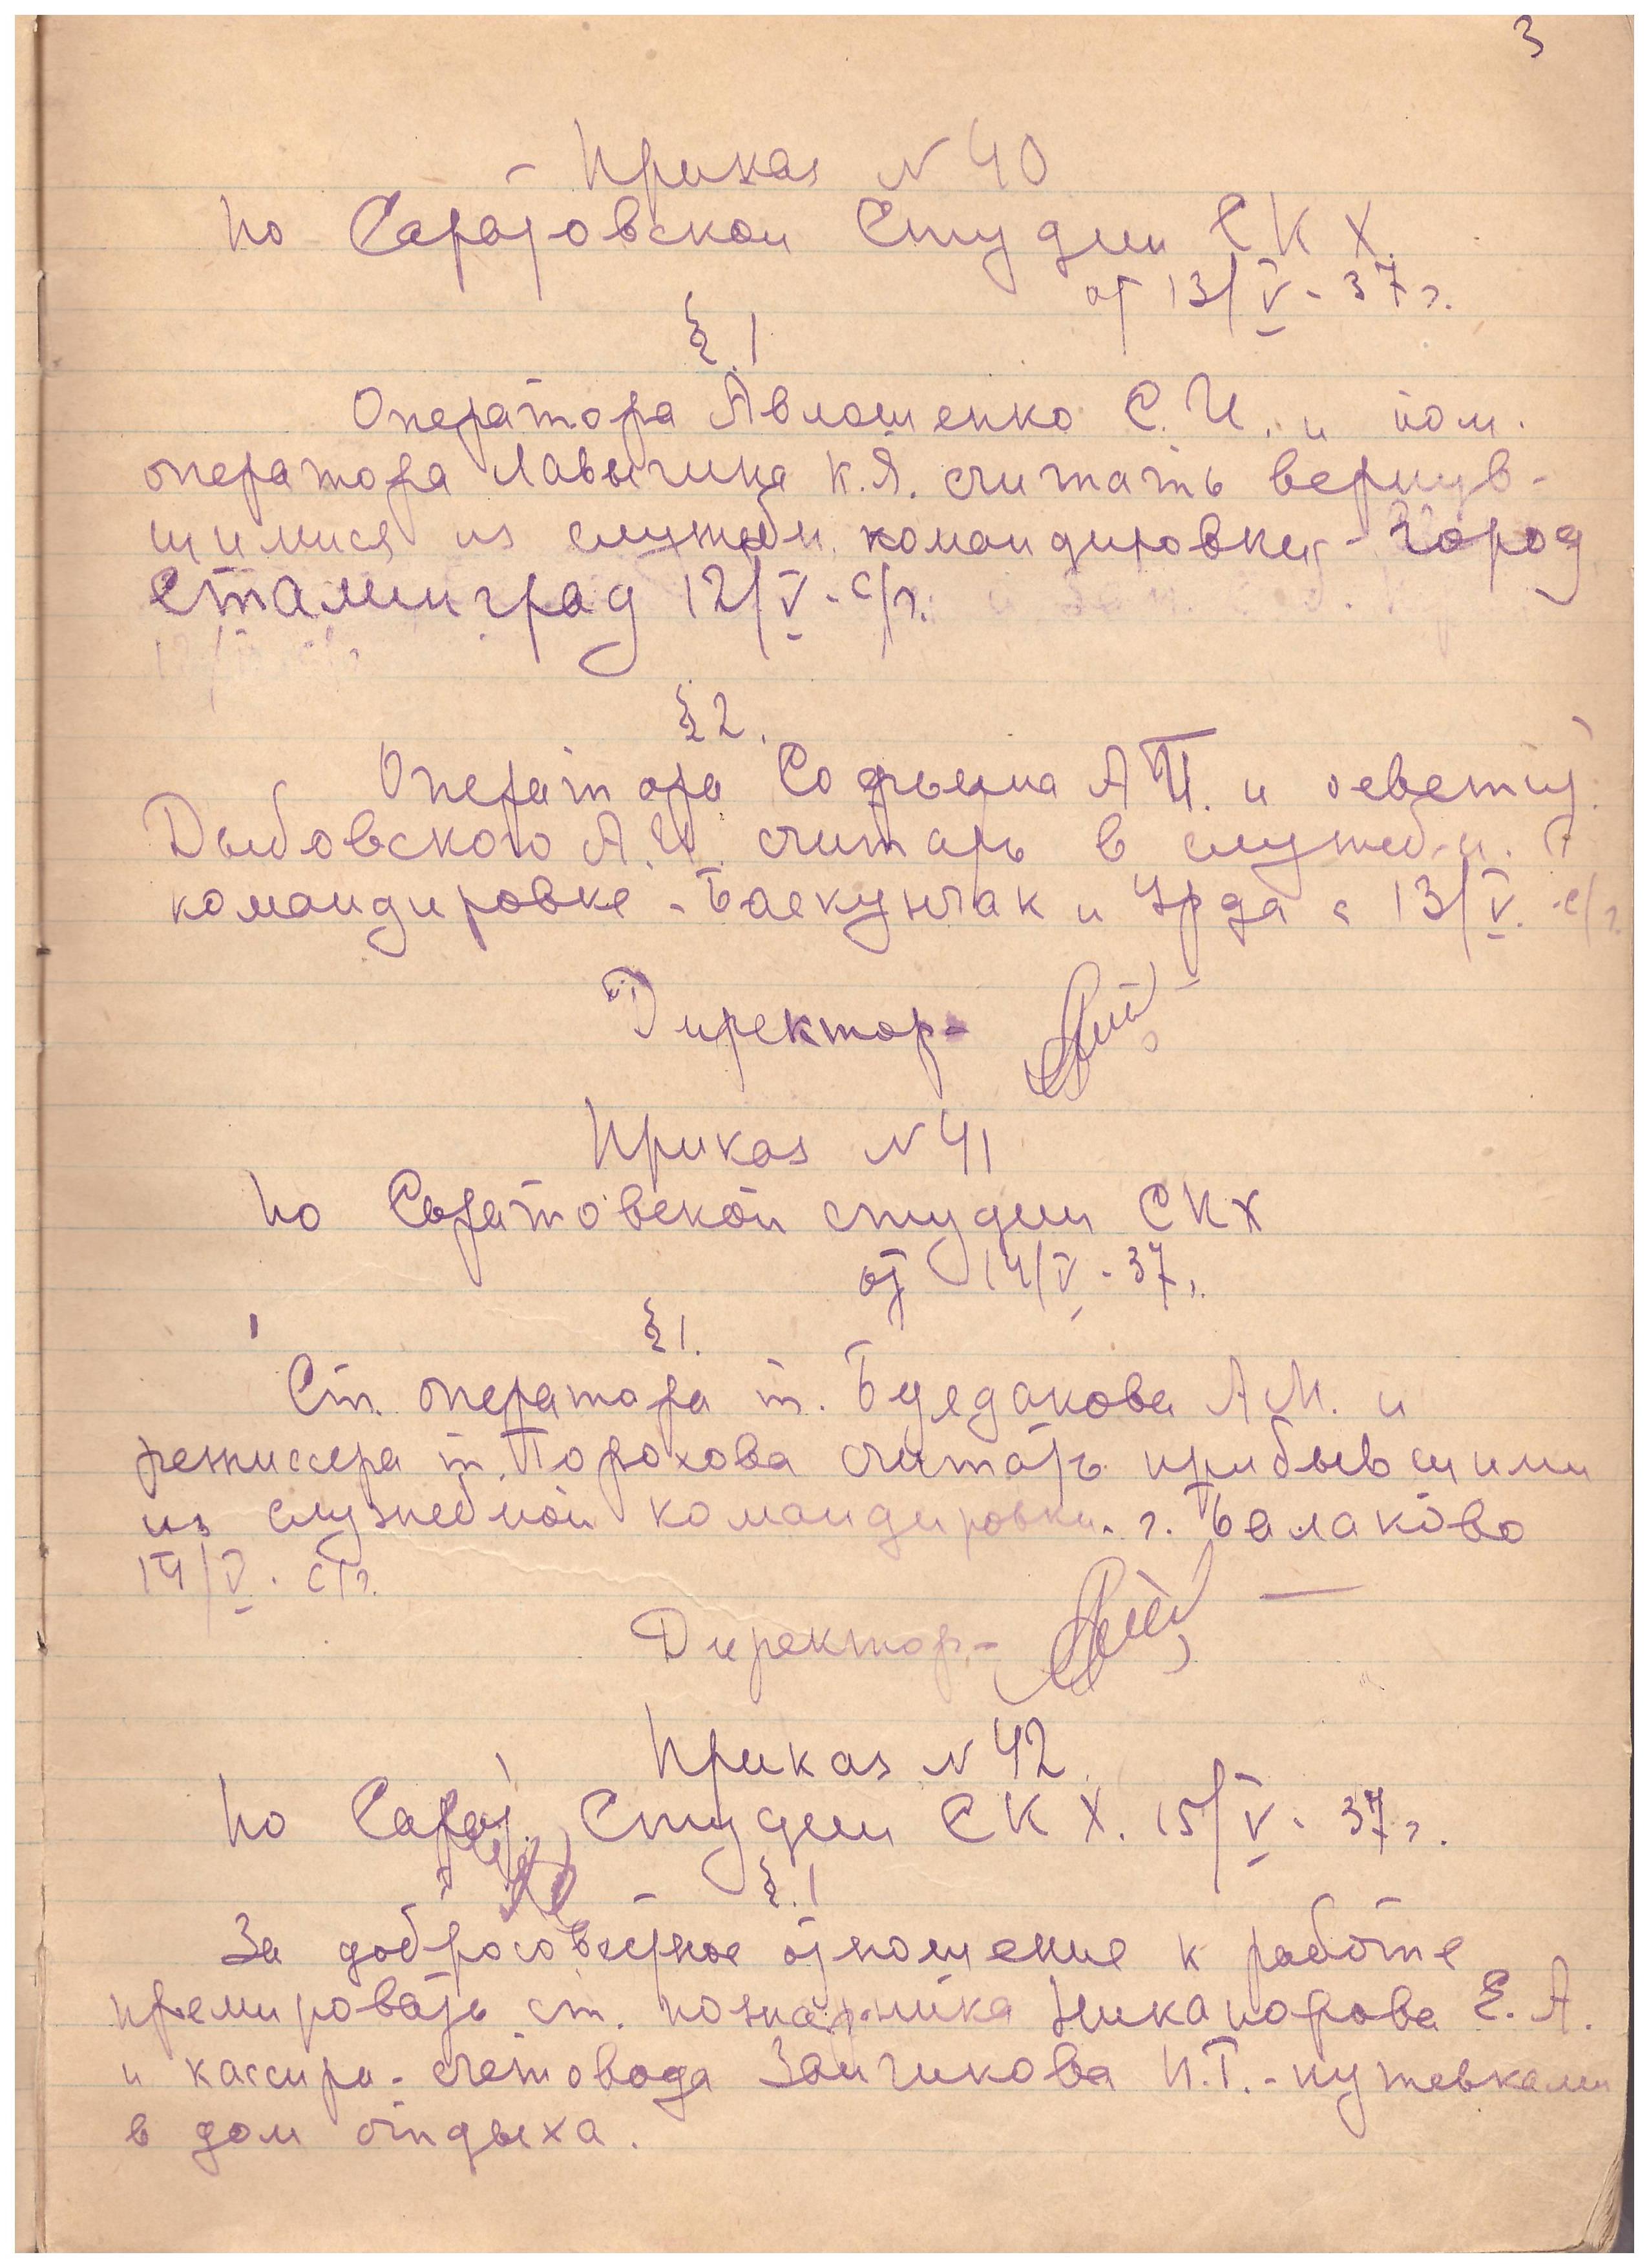 Приказы №40-44 по Саратовской студии кинохроники. (1937)